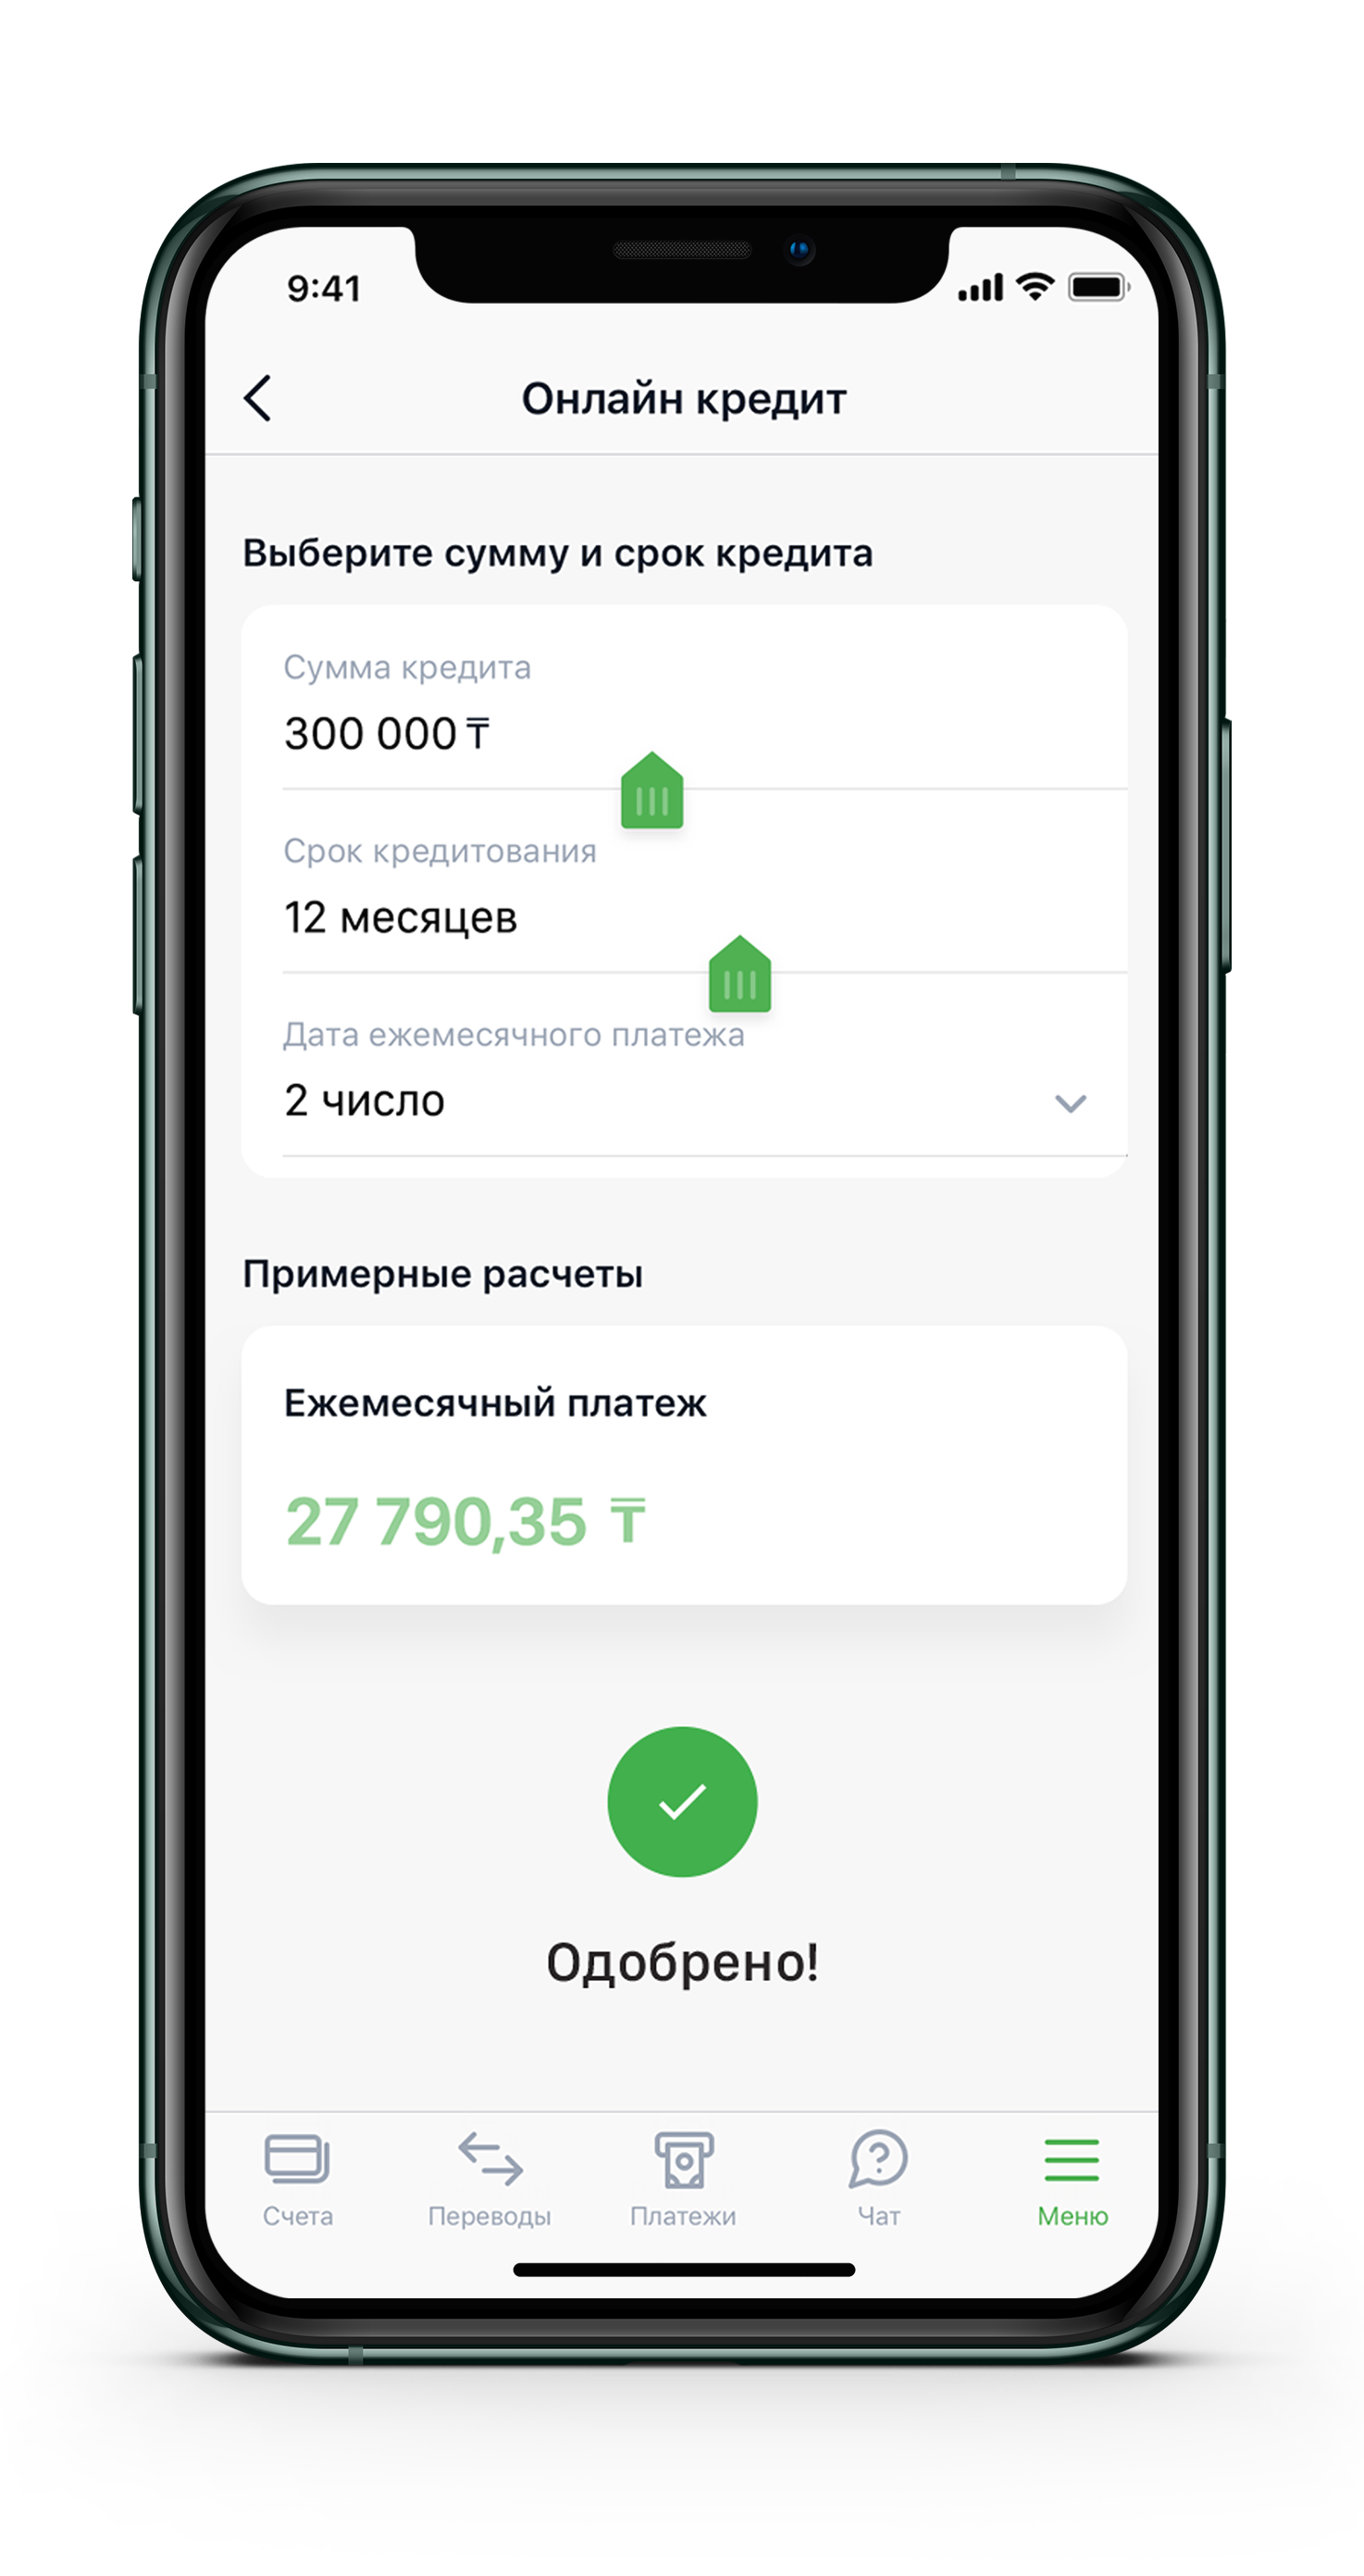 Онлайн кредитование по казахстану ипотека вместе с кредитом на ремонт